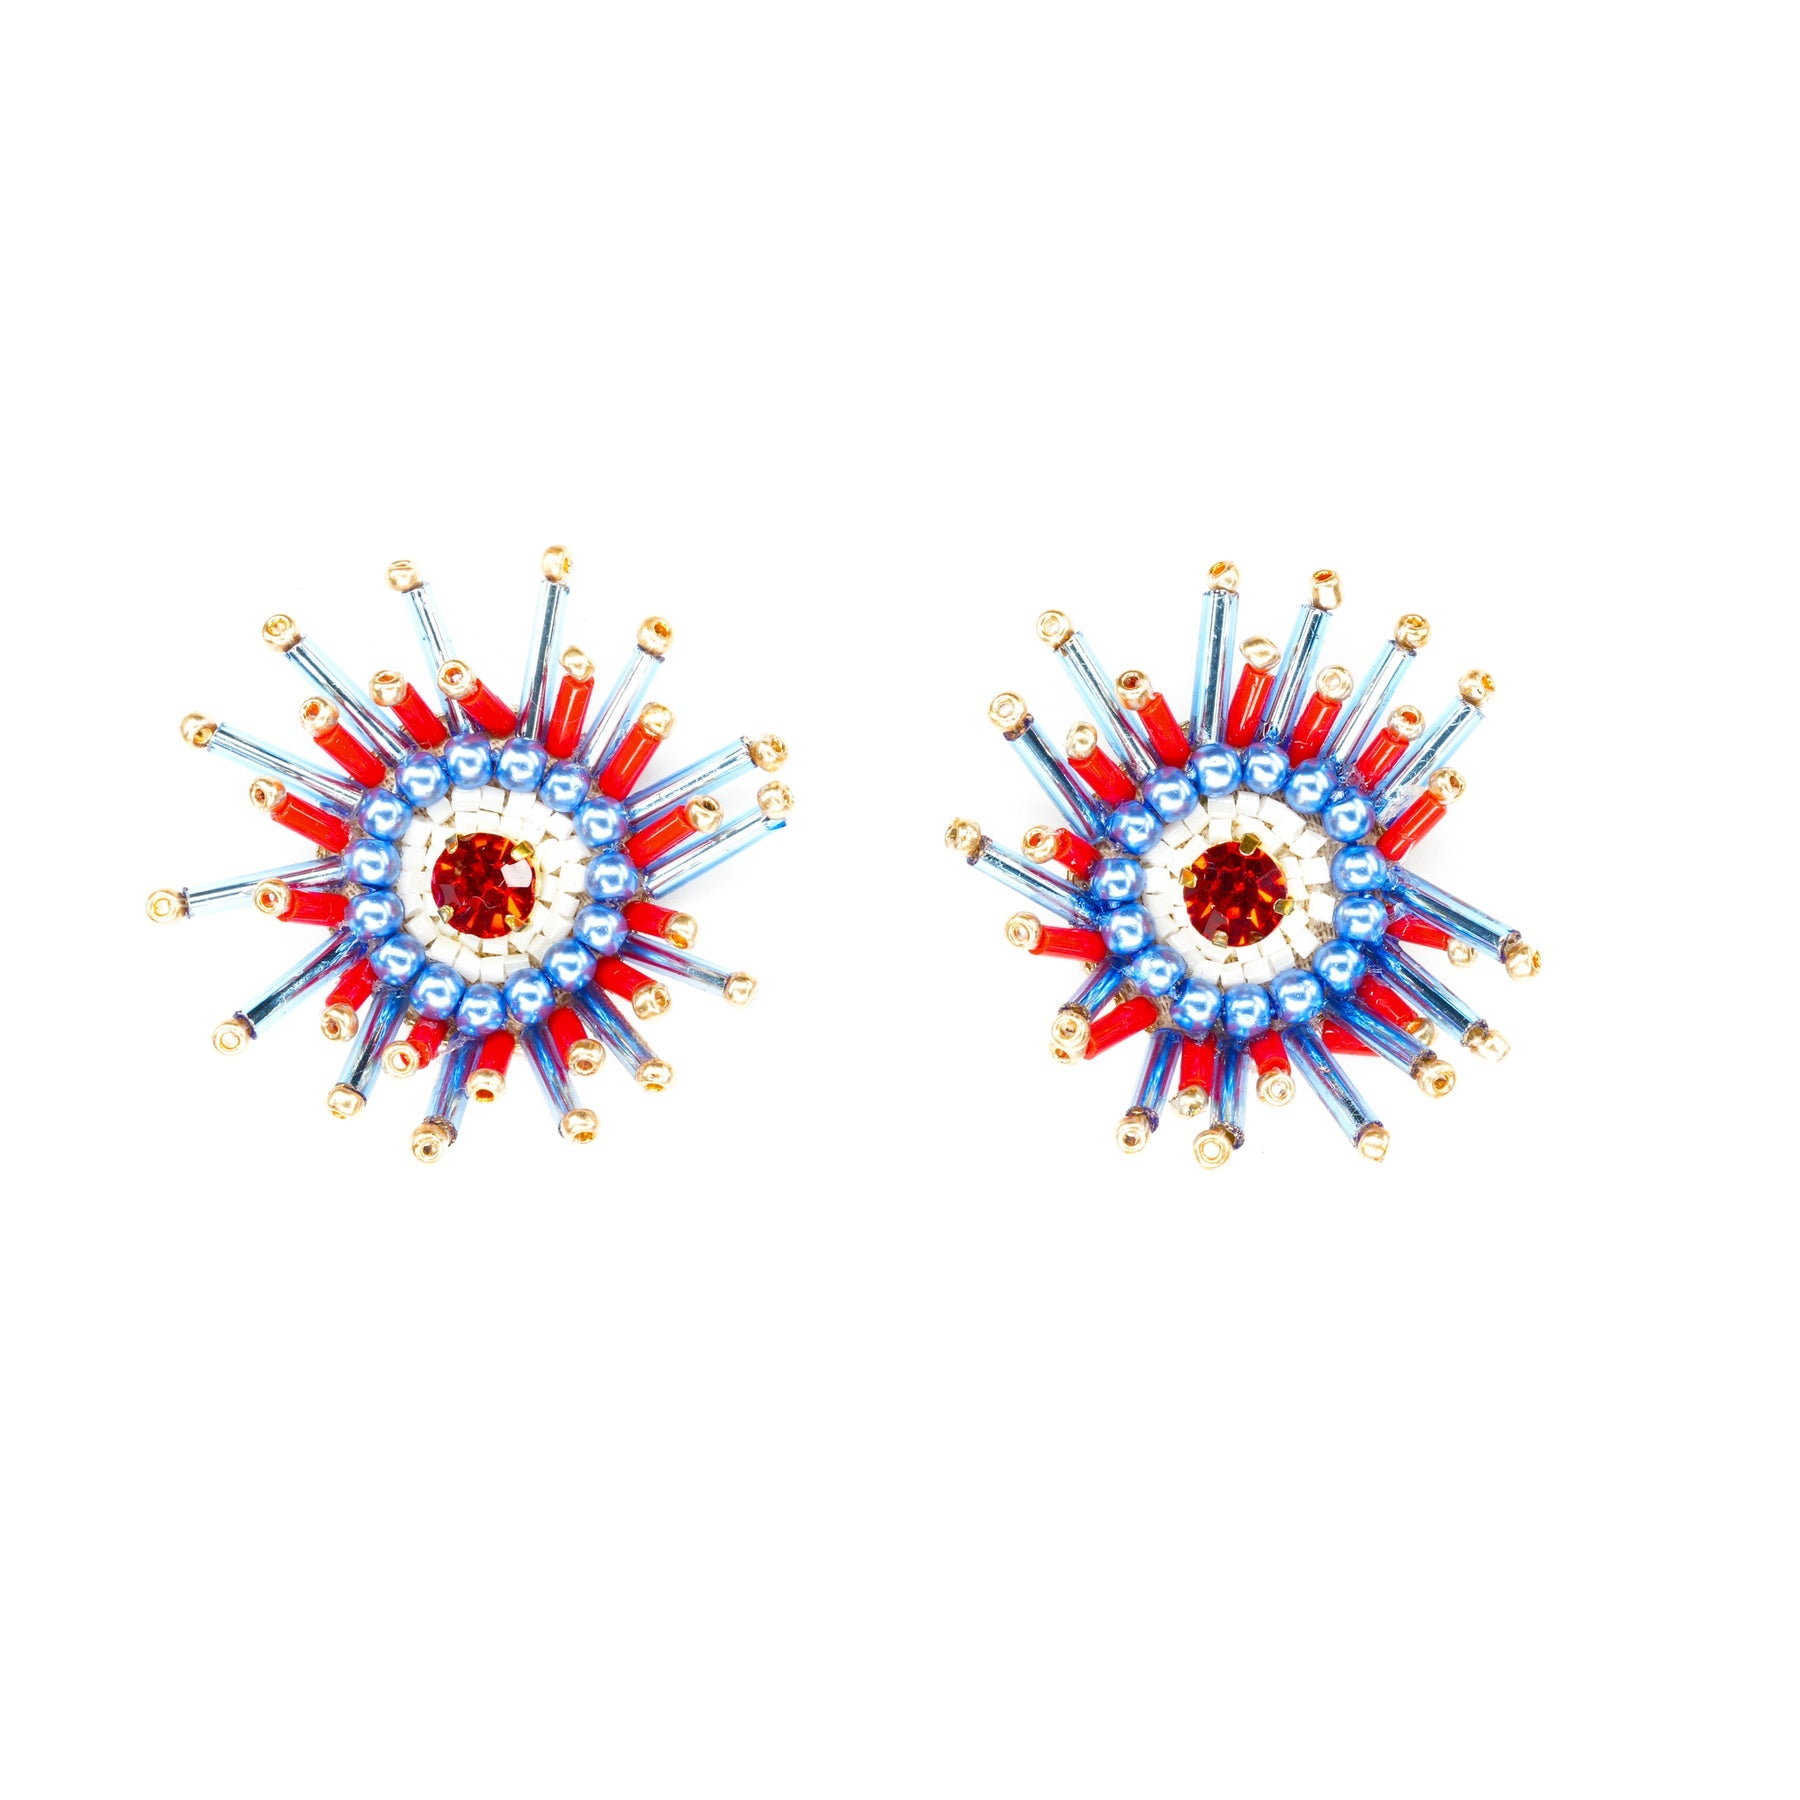 Sunburst Earrings in Red, White, and Blue